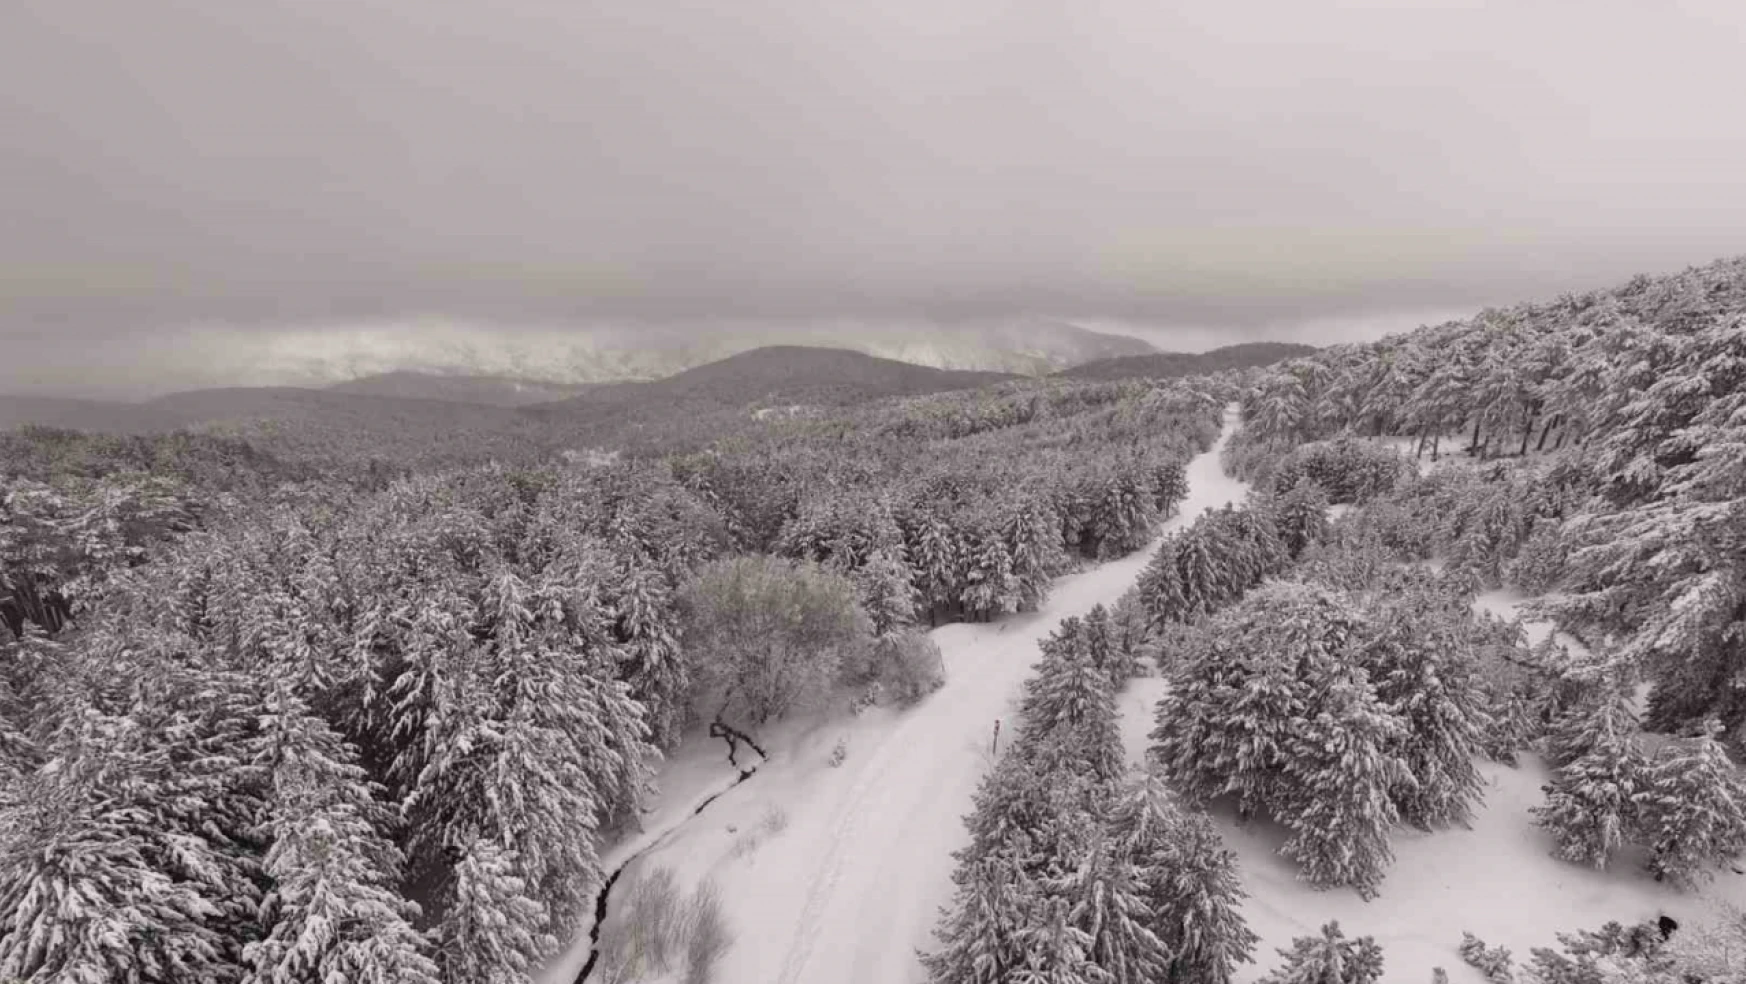 Kazdağı Milli Parkı'nda kar manzaraları dron ile görüntülendi